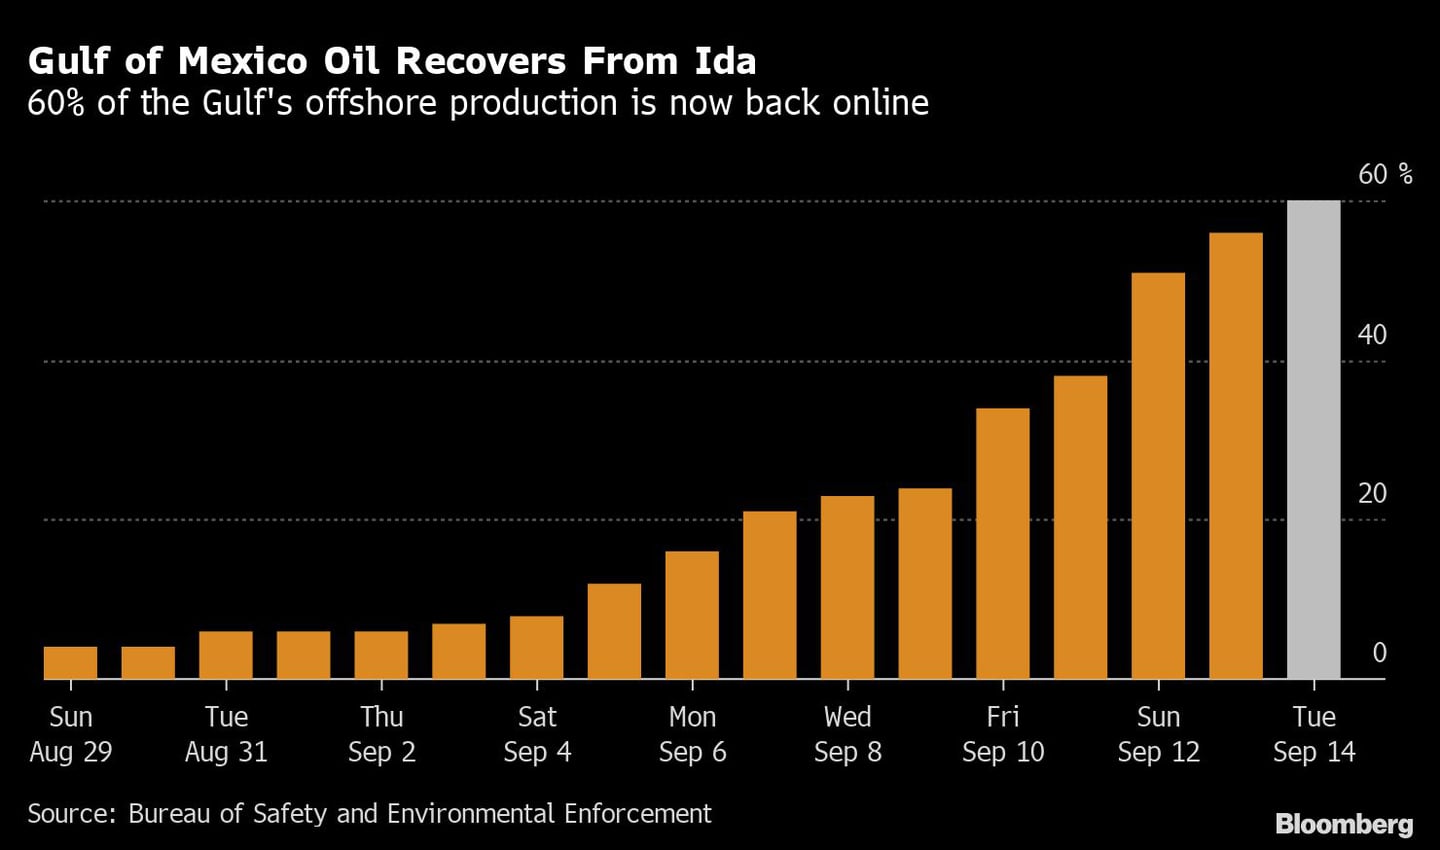 El petróleo del Golfo de México se recupera de Ida
El 60% de la producción en alta mar del Golfo vuelve a funcionardfd